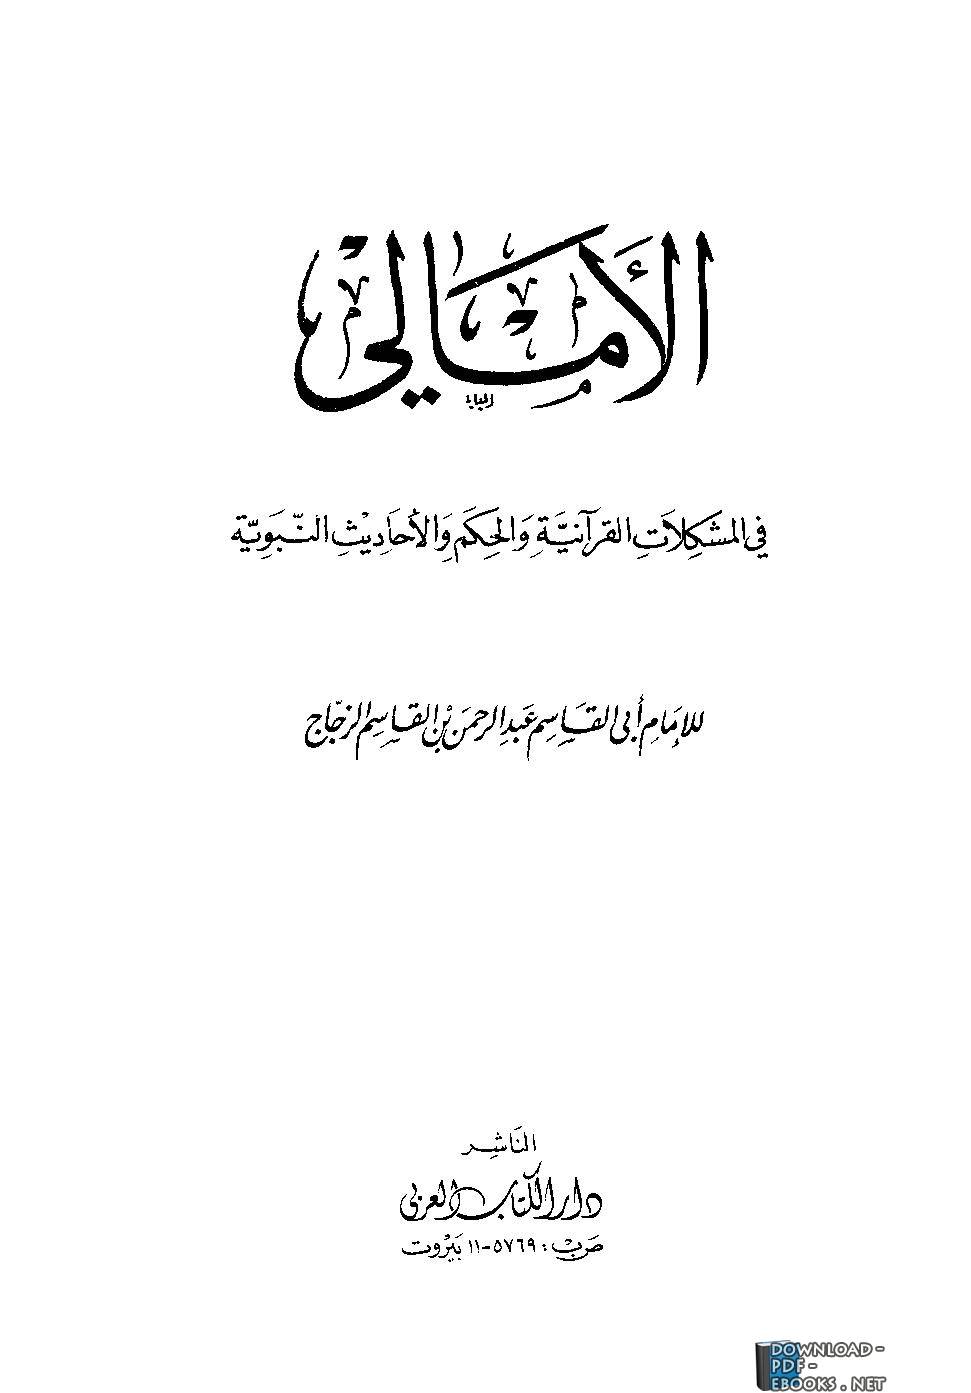  الأمالي في المشكلات القرآنية والحكم والأحاديث النبوية